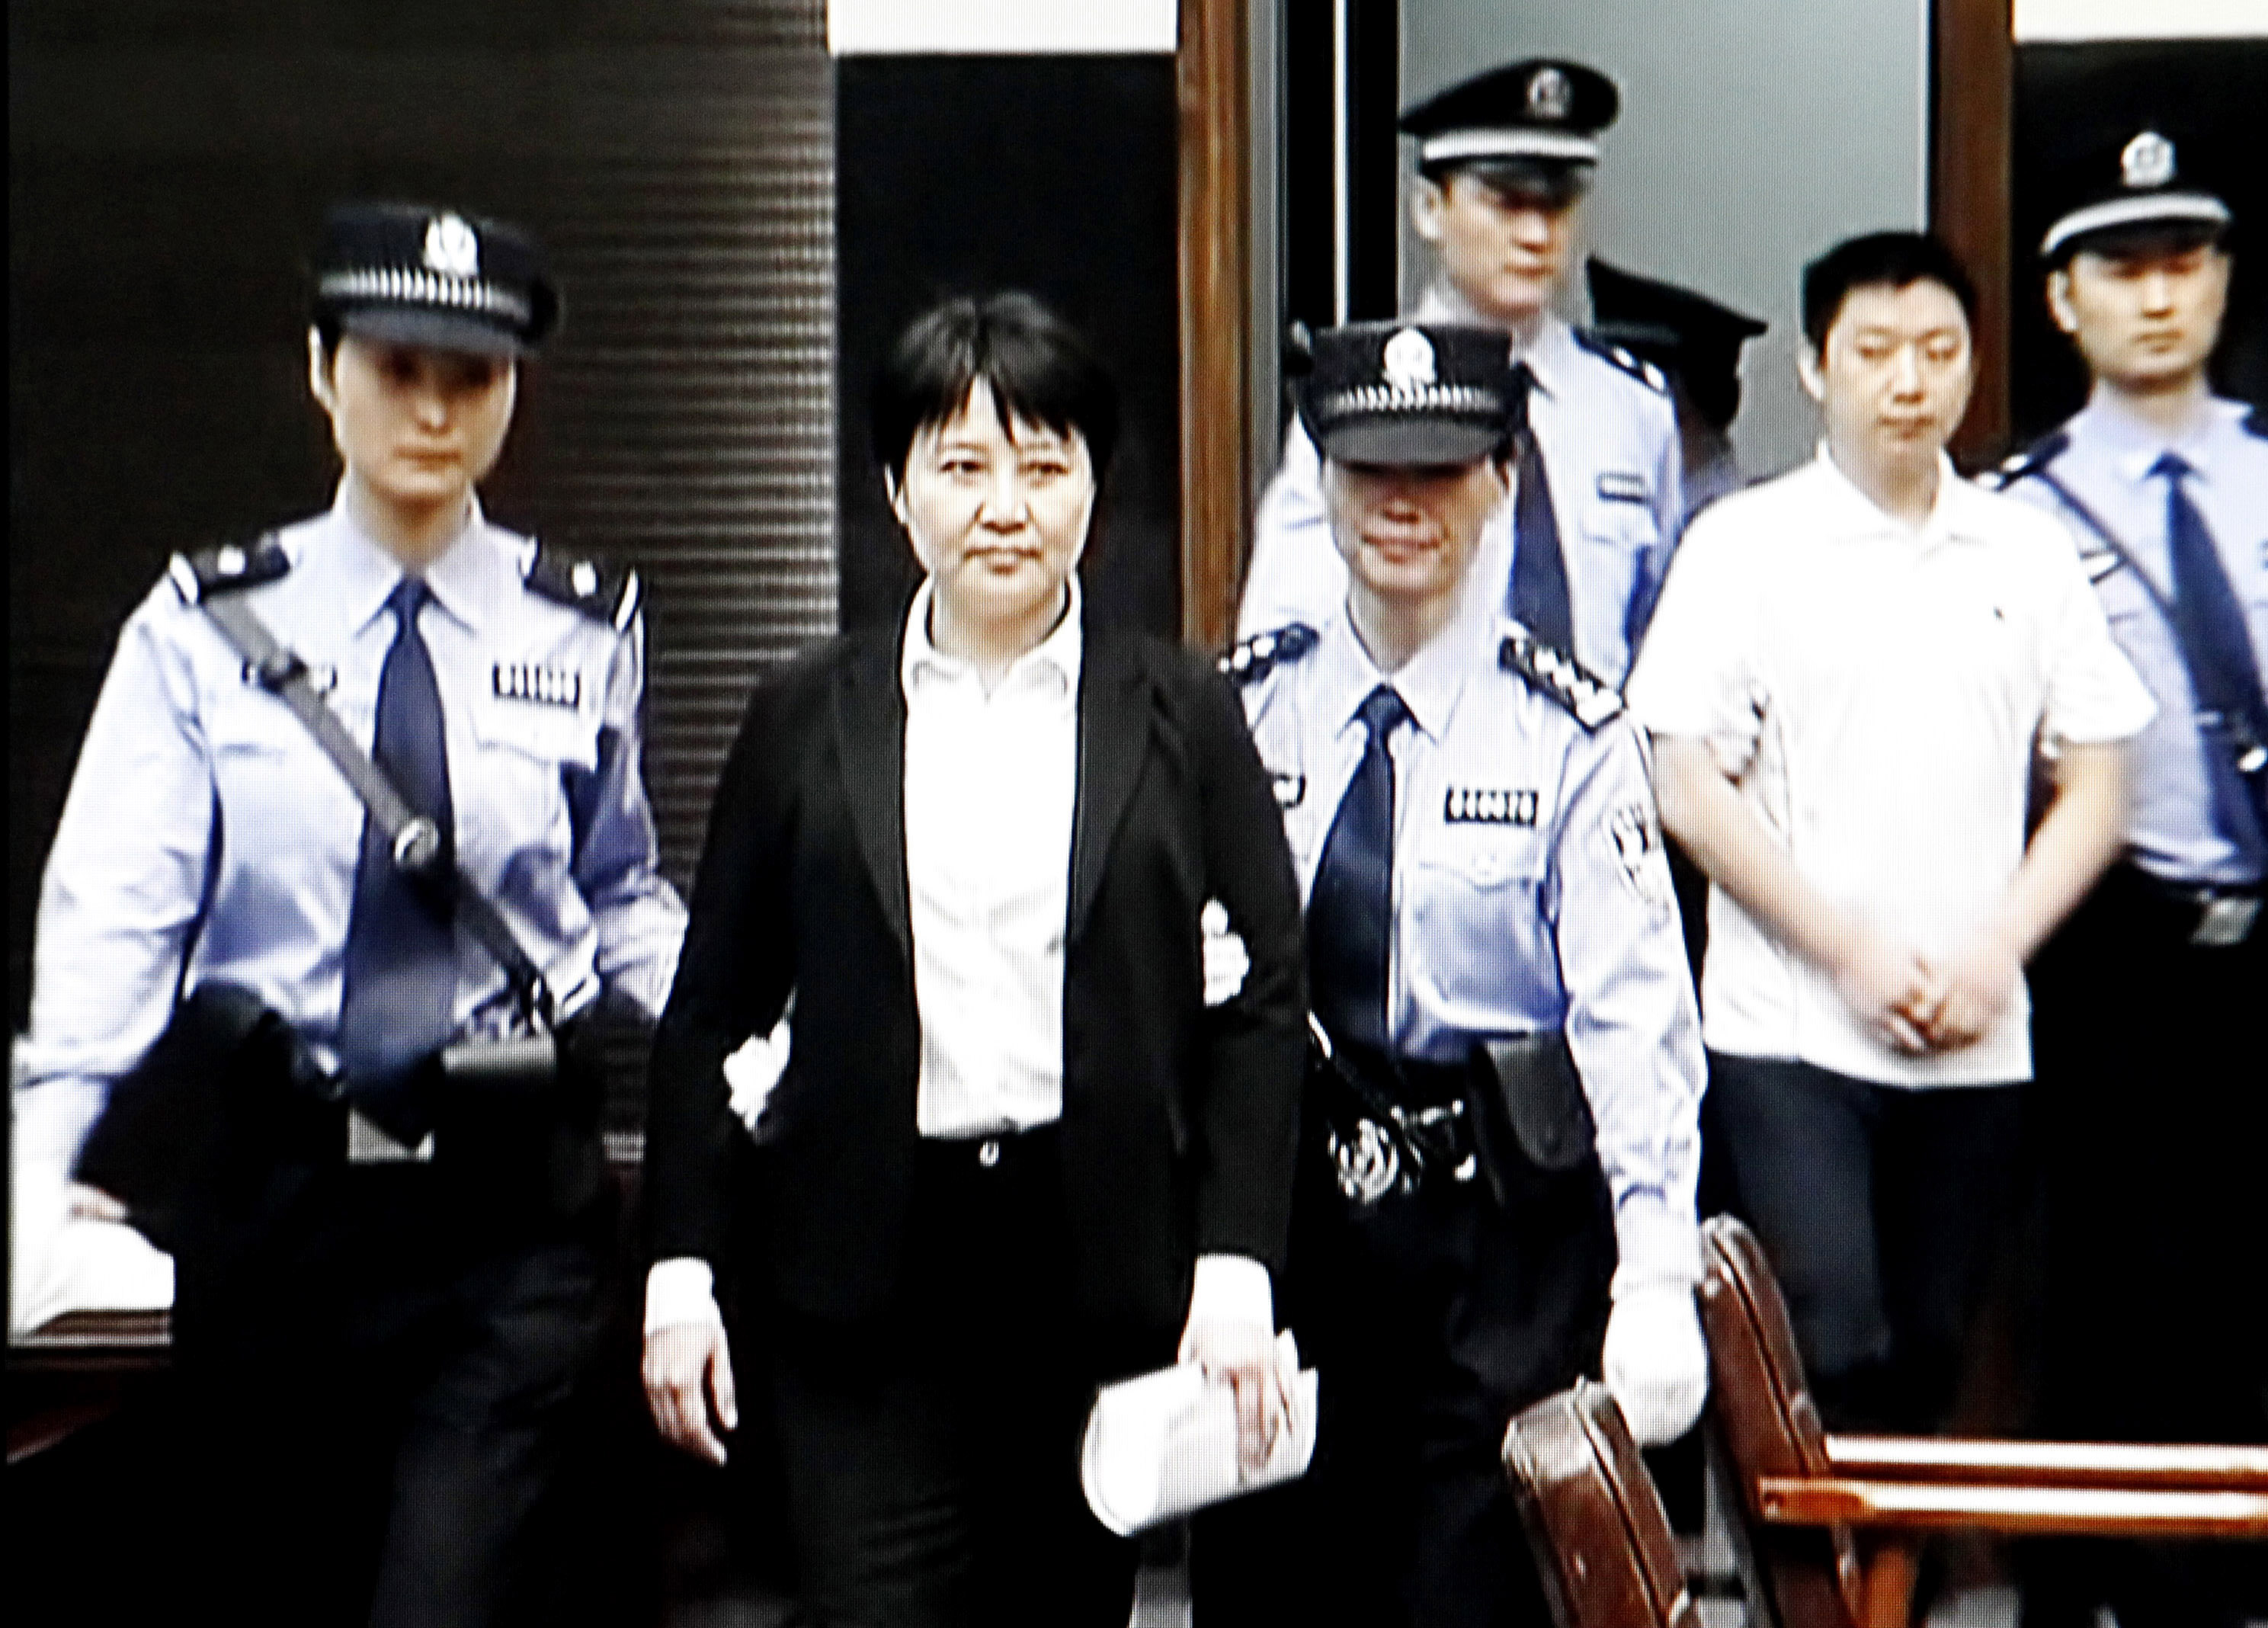 Giftmordprozess in China: Bedingte Todesstrafe für Gu Kailai